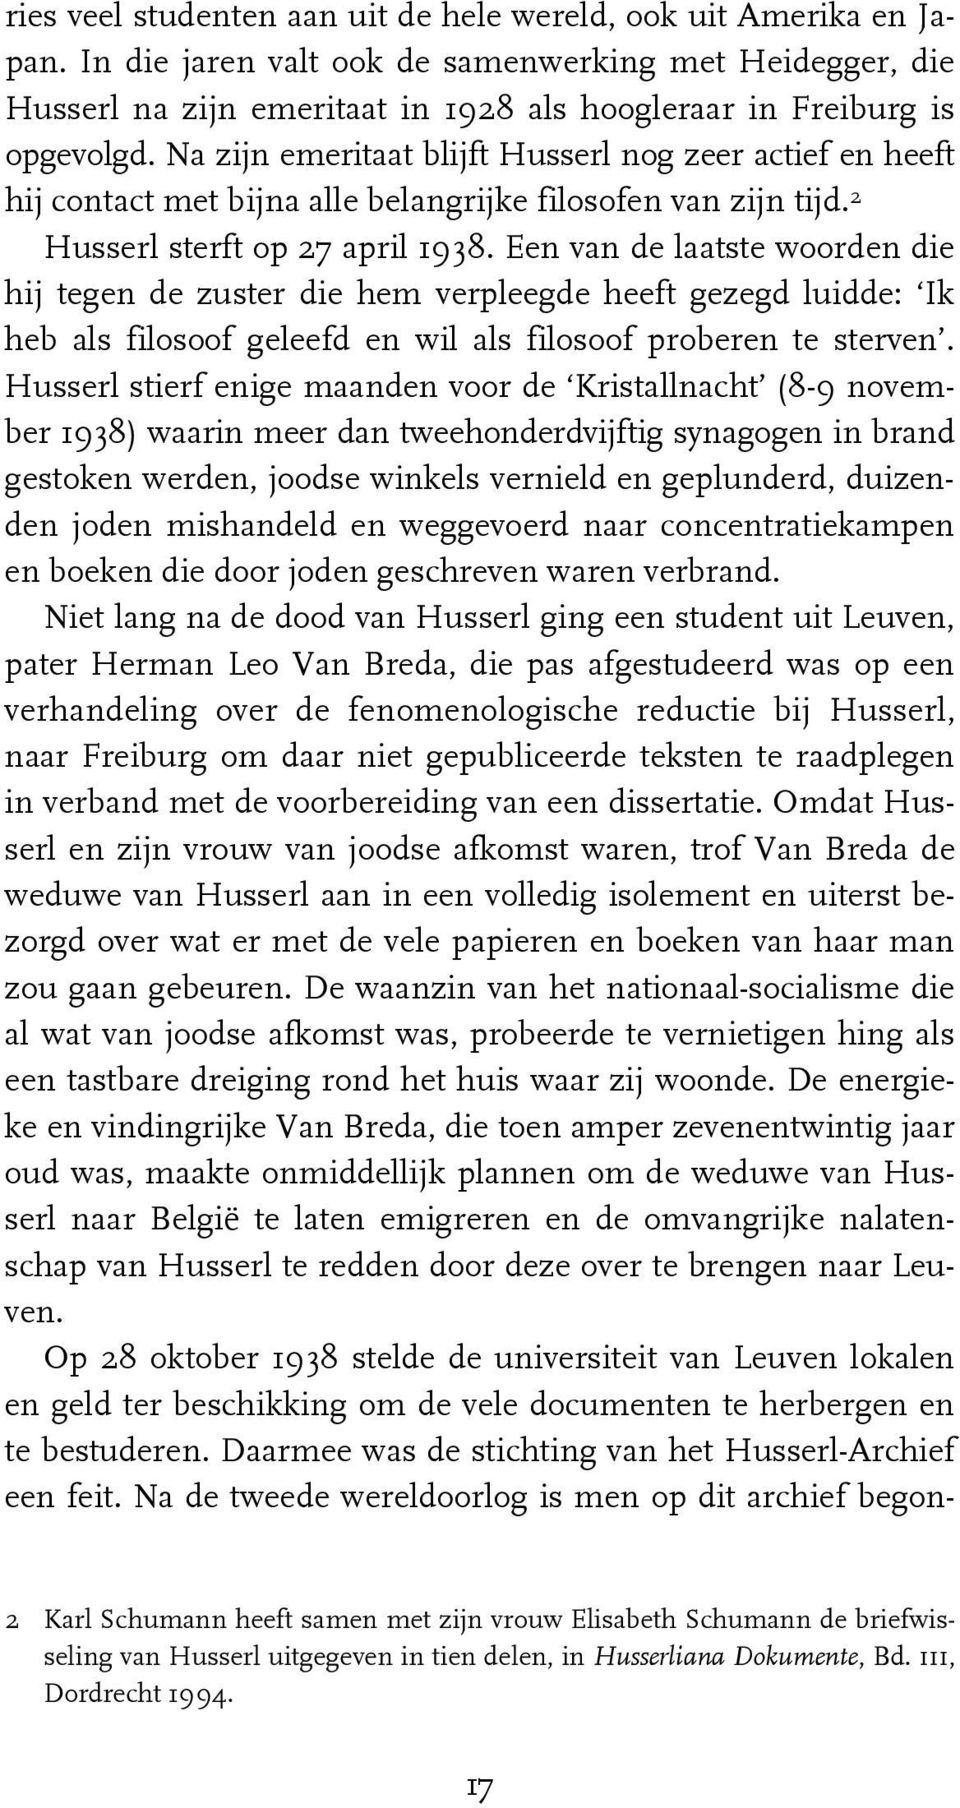 Na zijn emeritaat blijft Husserl nog zeer actief en heeft hij contact met bijna alle belangrijke filosofen van zijn tijd. 2 Husserl sterft op 27 april 1938.